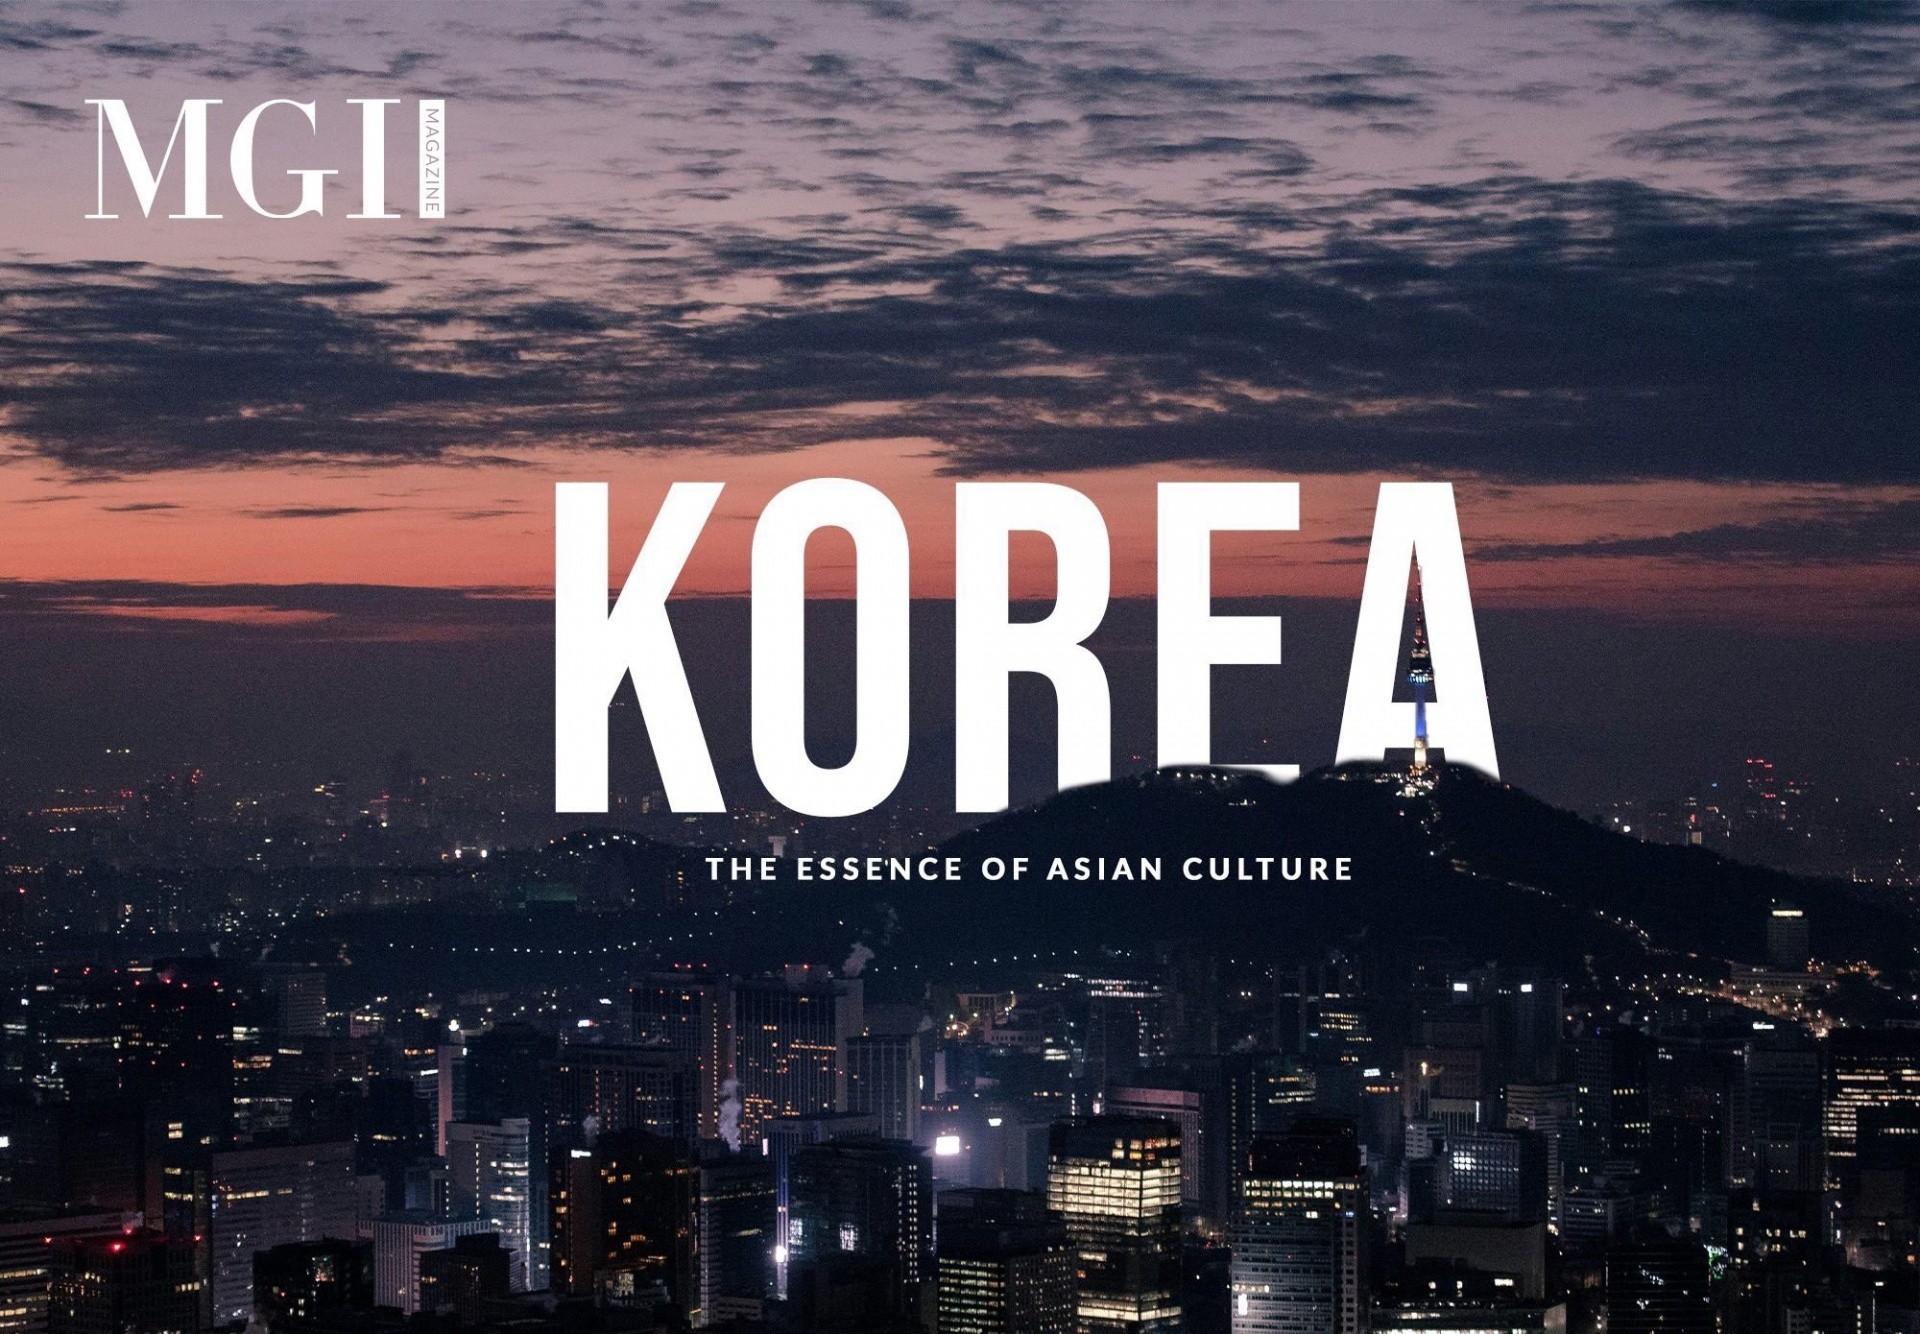 Korea - The essence of Asian culture